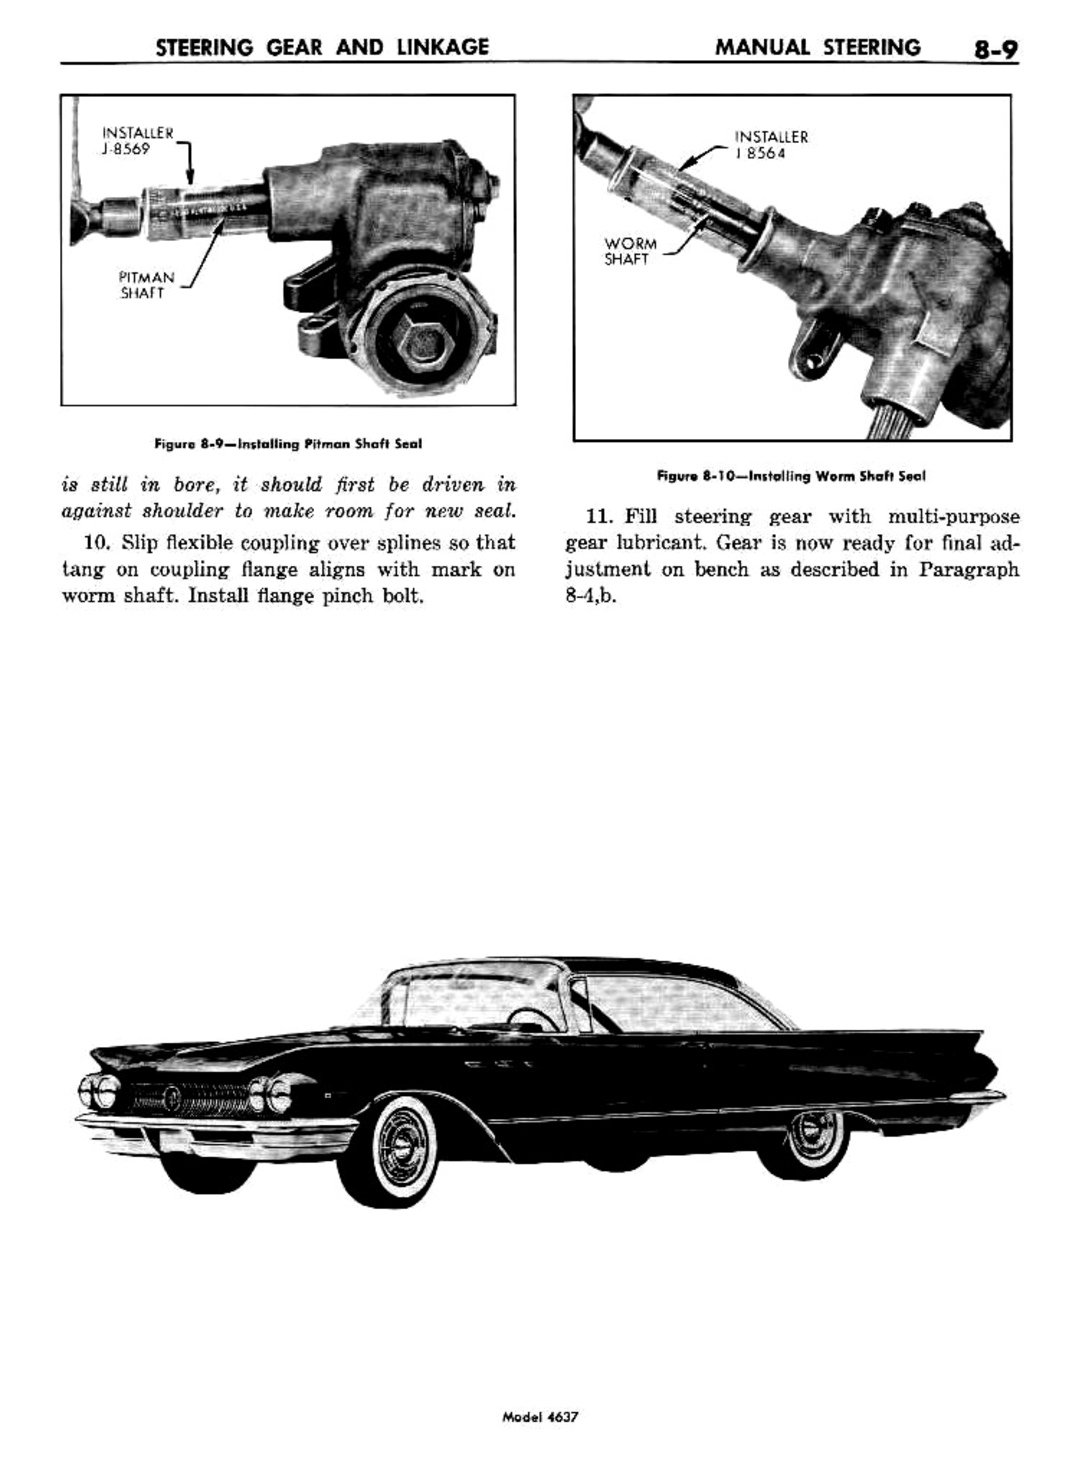 n_09 1960 Buick Shop Manual - Steering-009-009.jpg